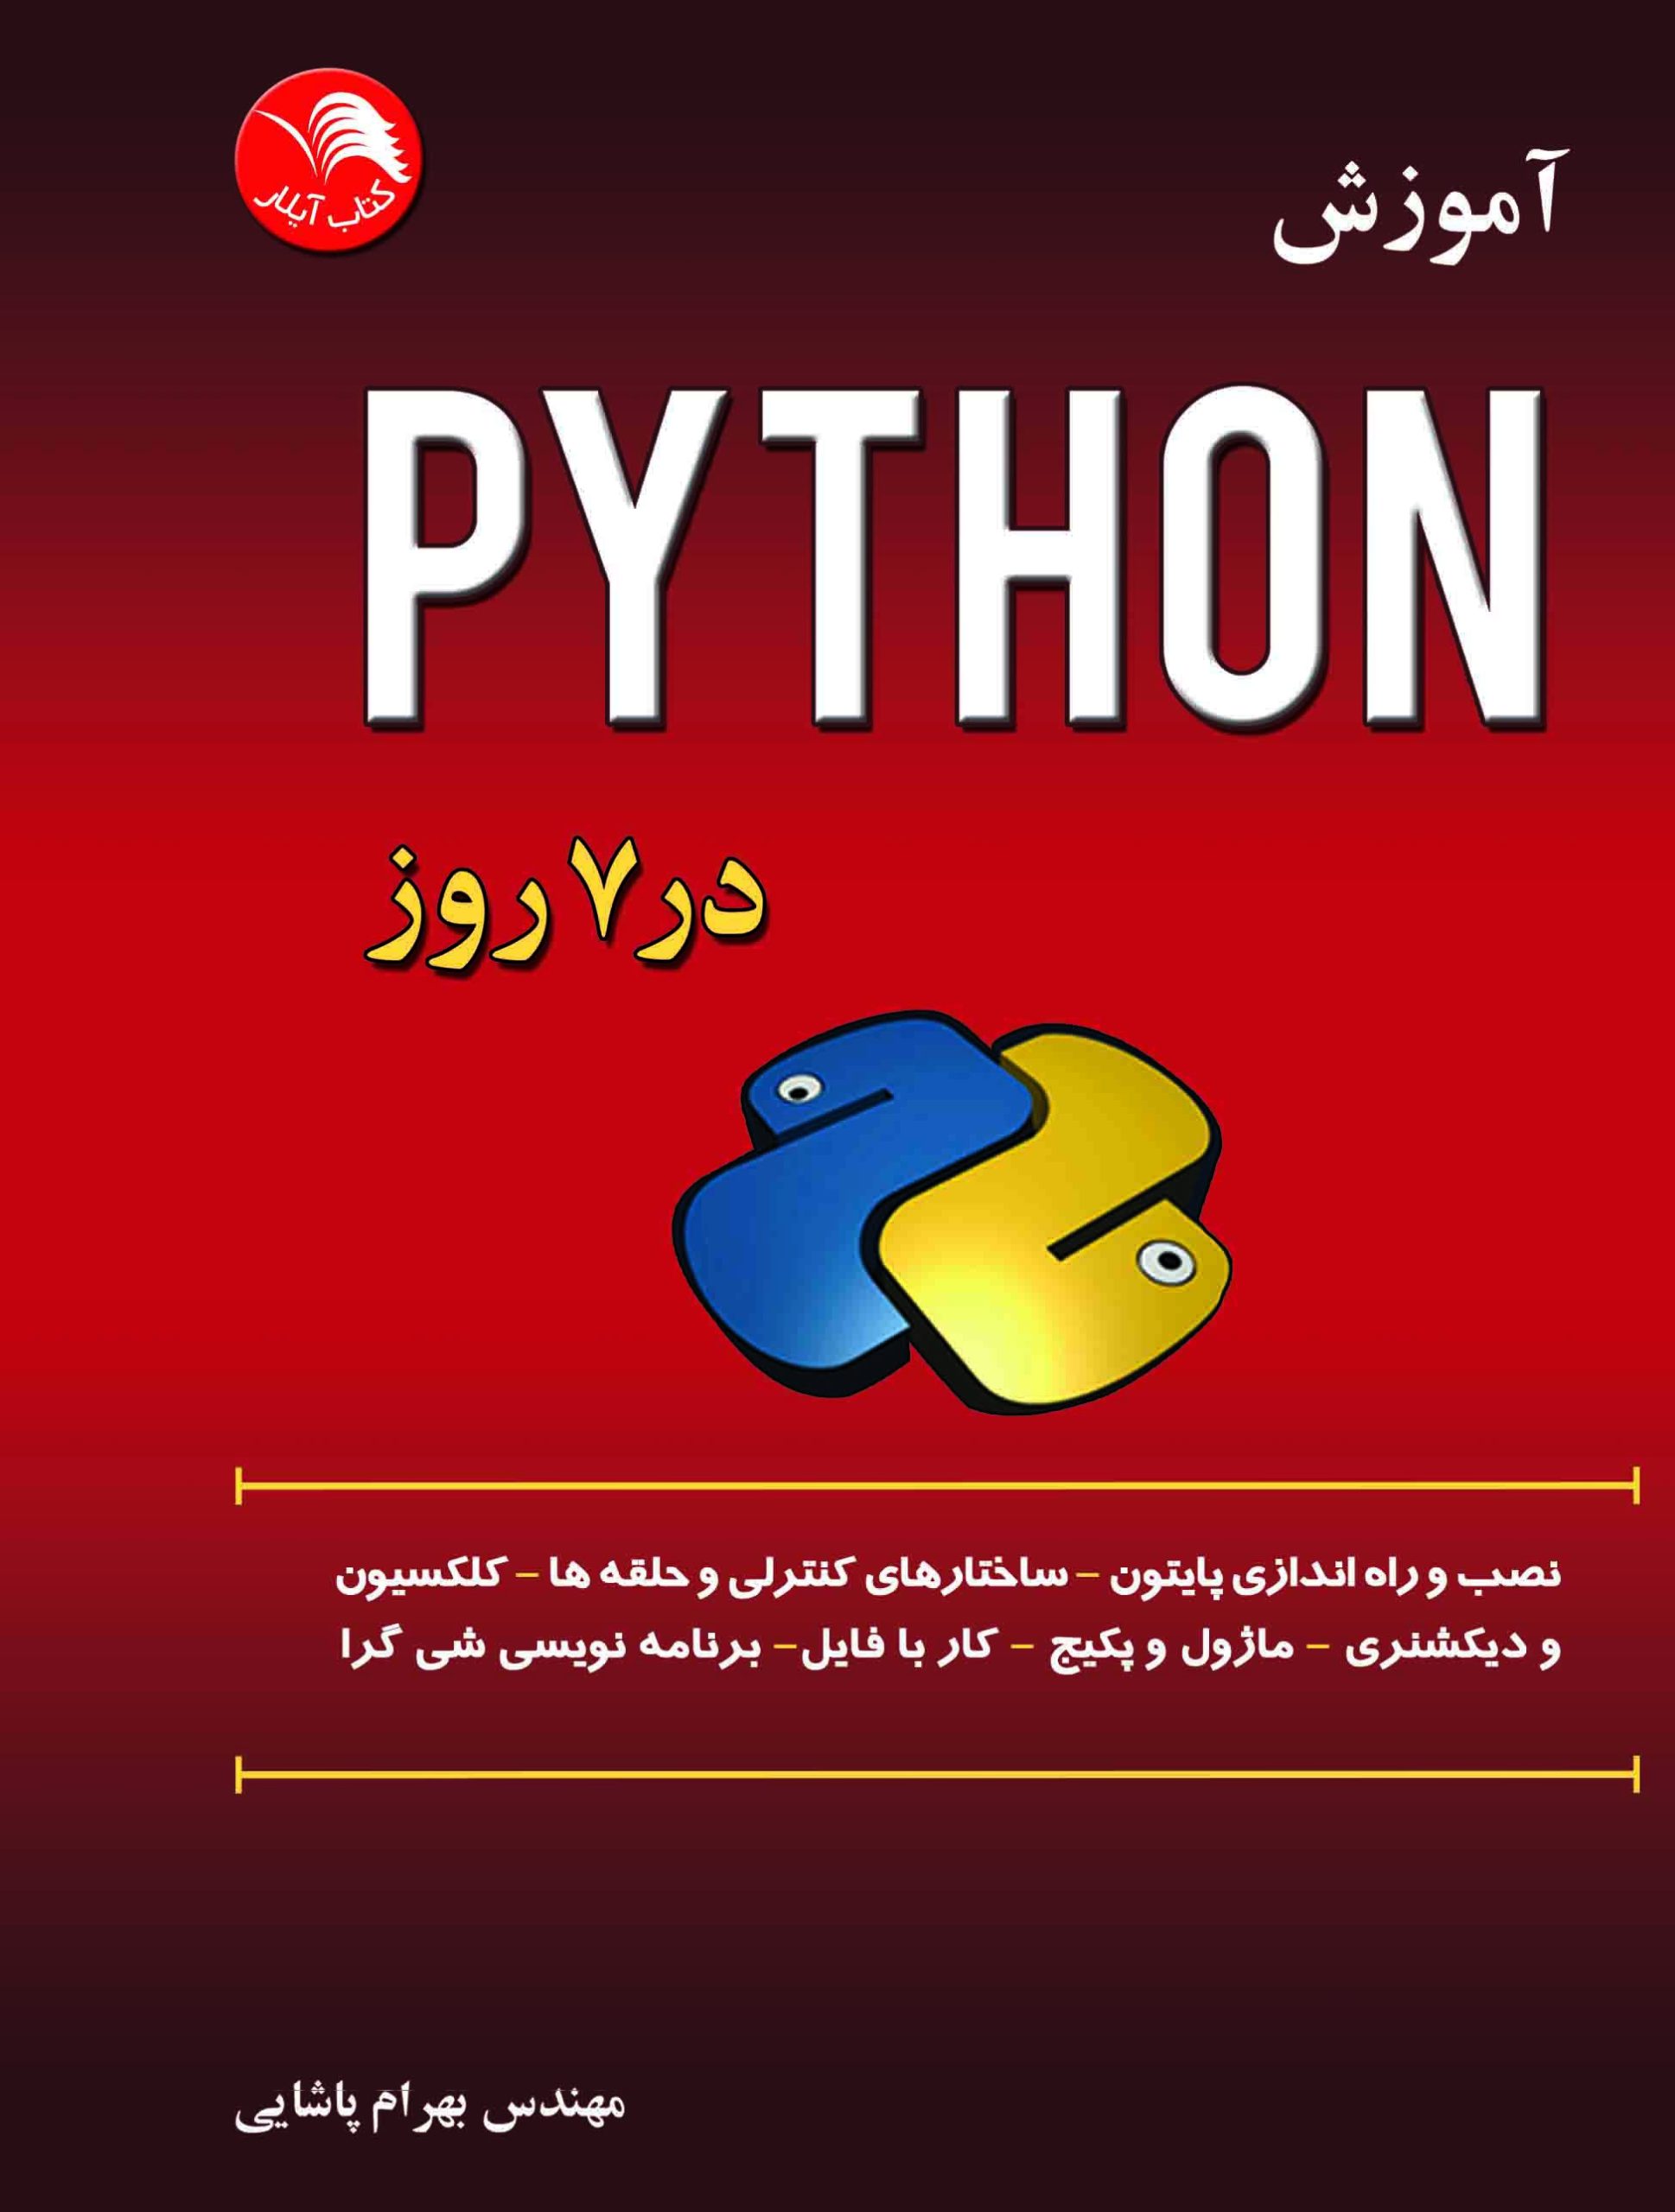 آموزش پایتون Python در 7 روز